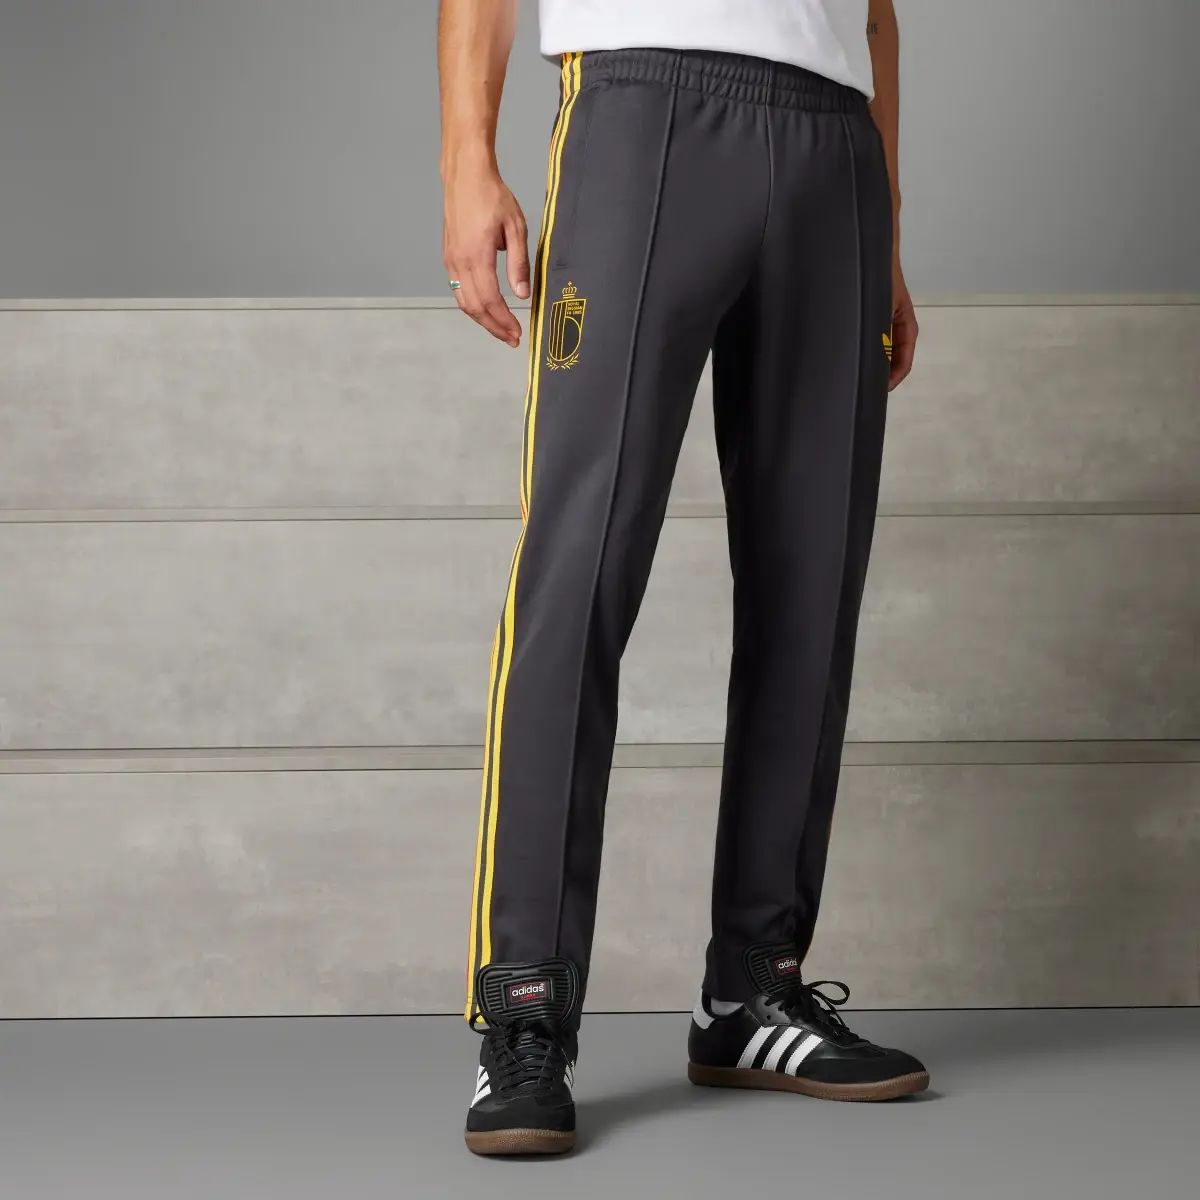 Adidas Pantalon de survêtement Belgique Beckenbauer. 1